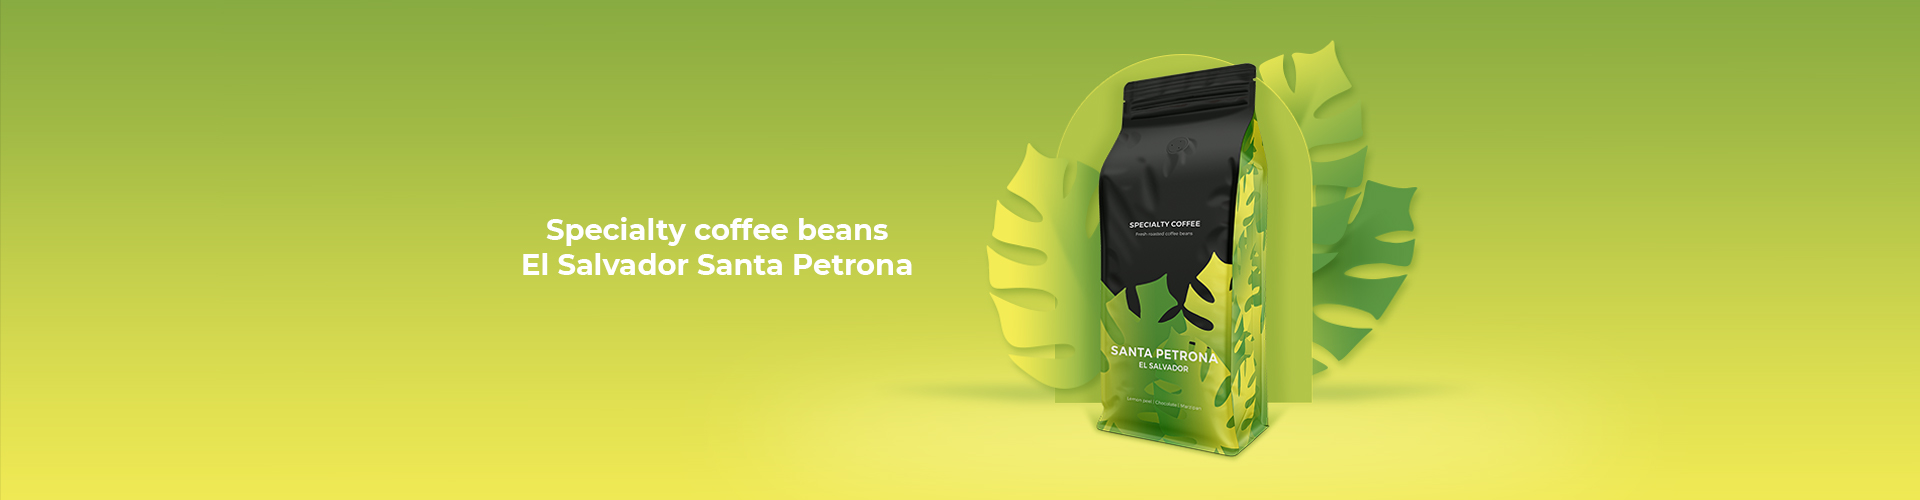 Specialty coffee beans El Salvador Santa Petrona